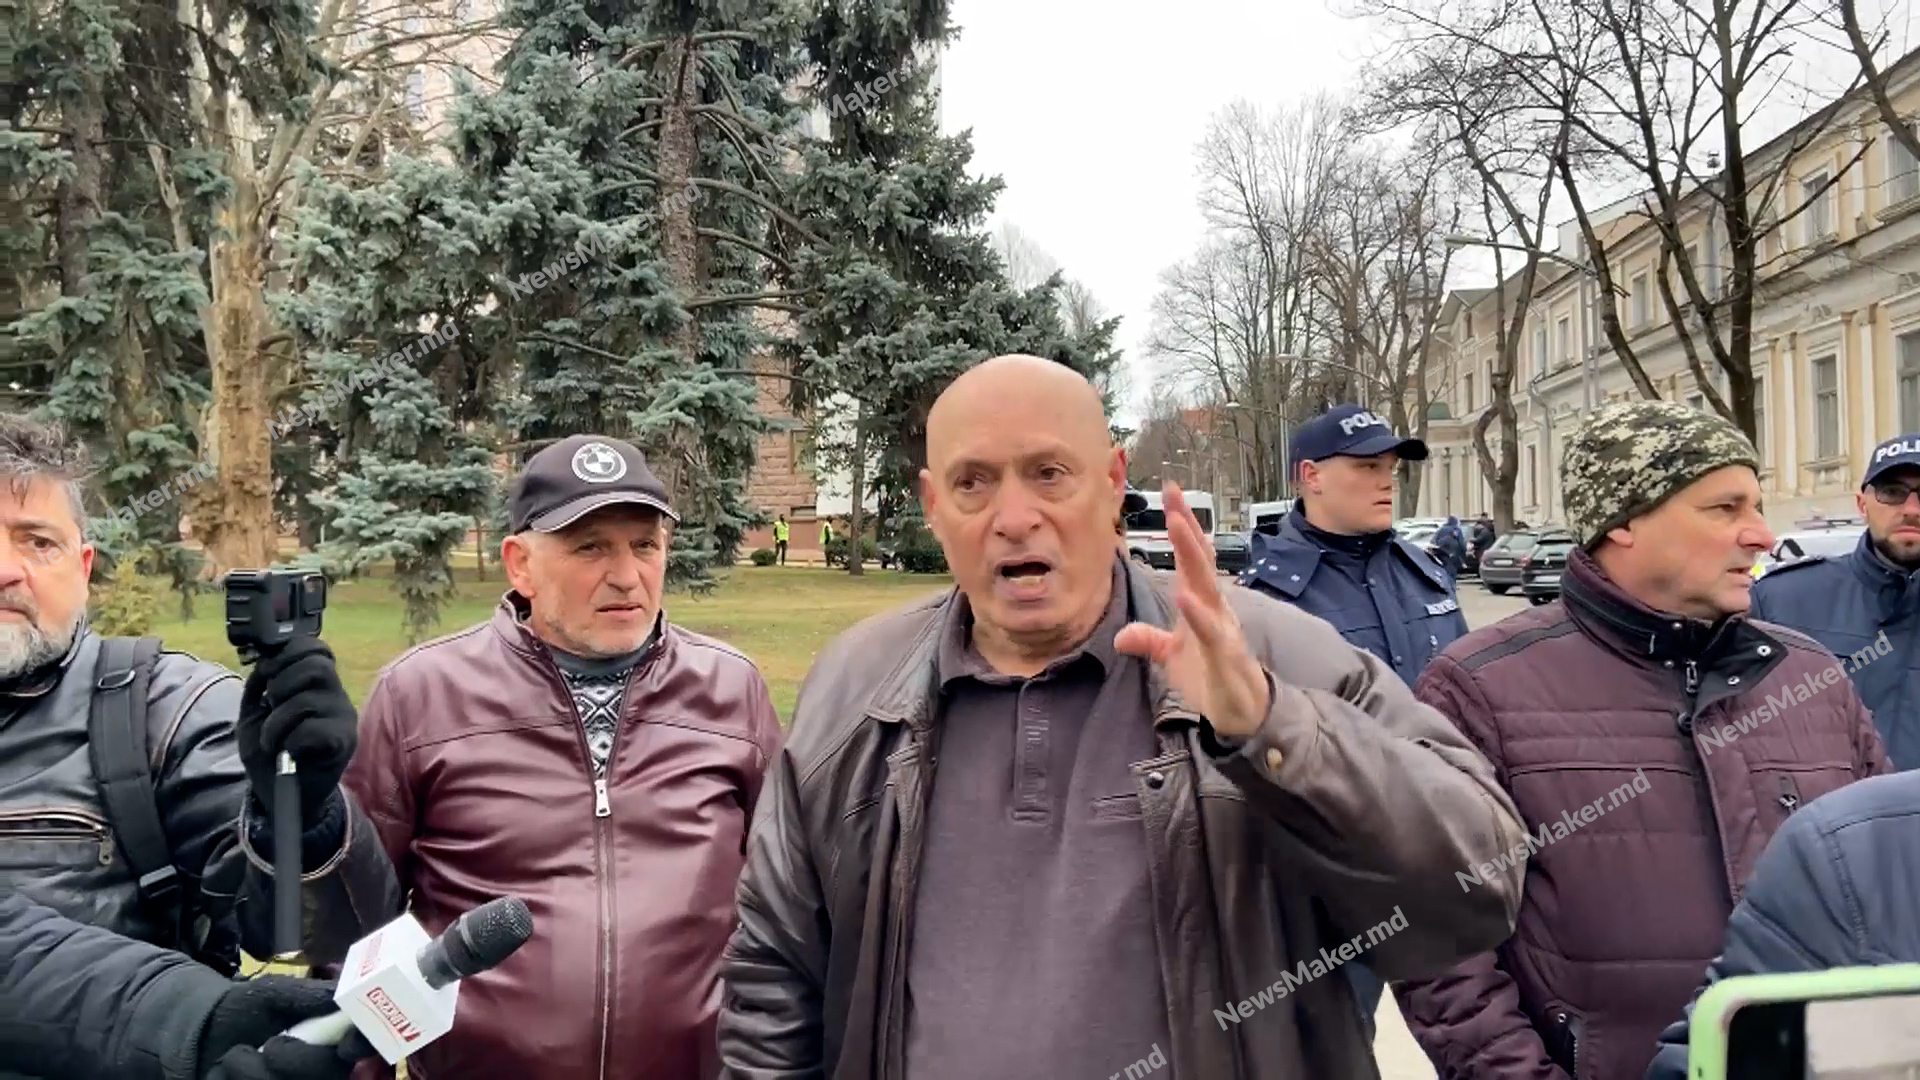 (ВИДЕО) Столкновения у здания парламента. На мэра Оргеева напал контр-протестующий